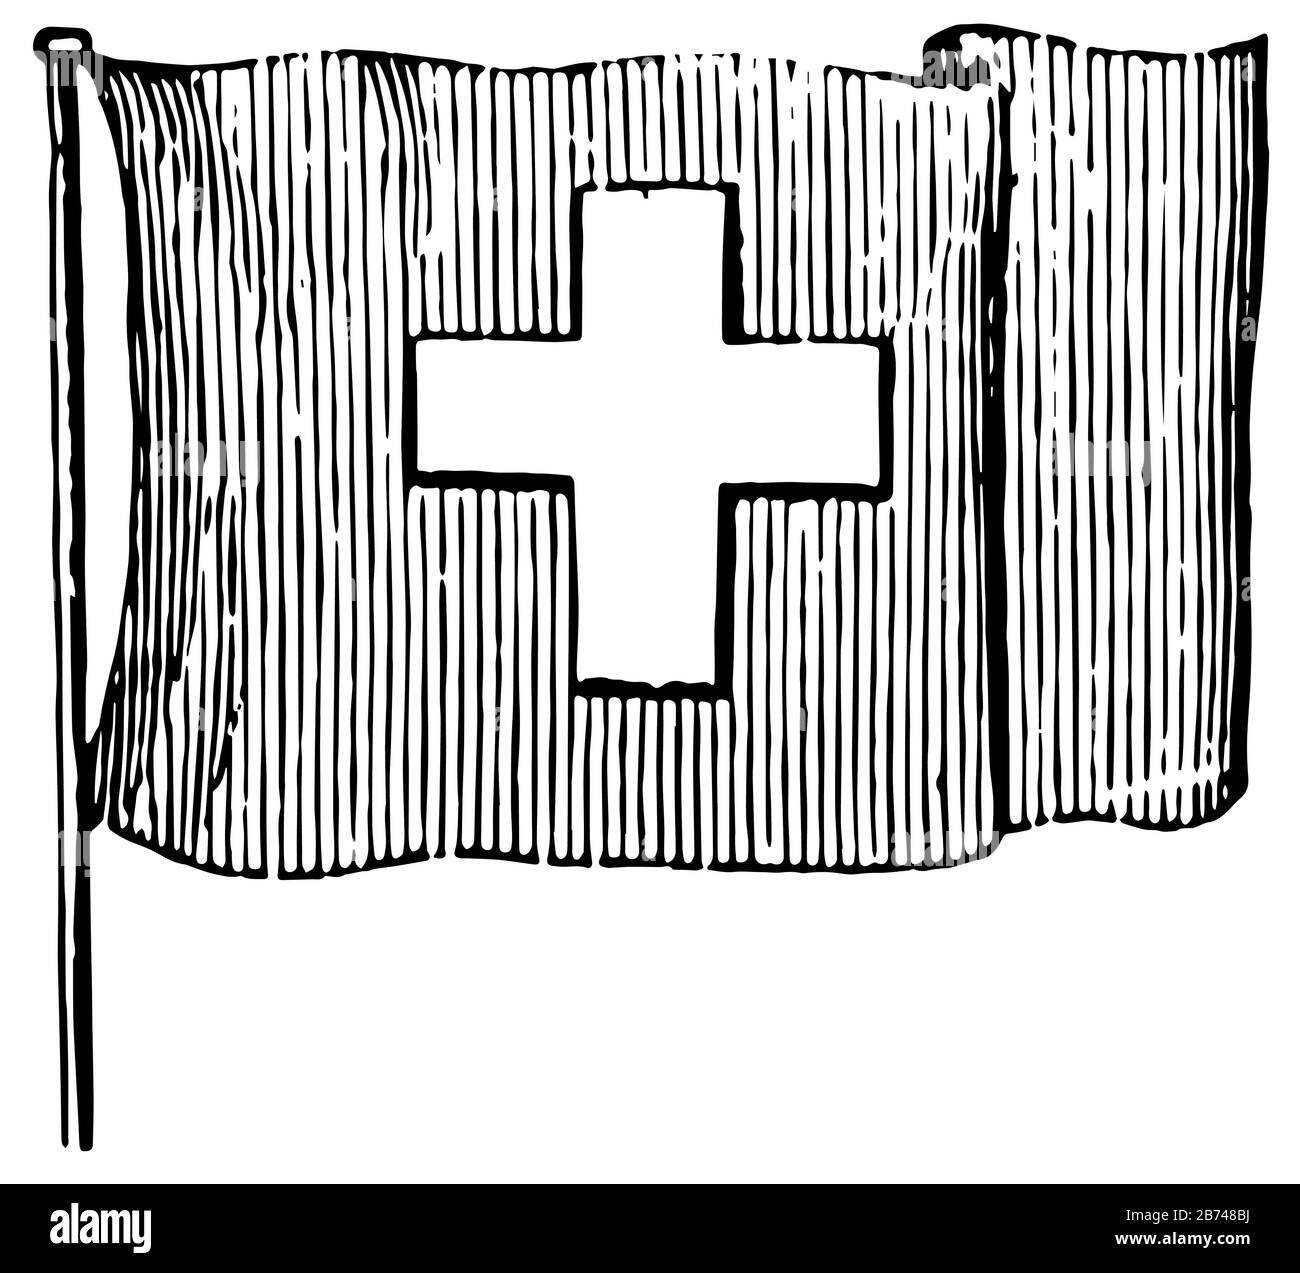 Bandiera della Svizzera, 1881, questa bandiera ha croce bianca al centro della bandiera e strisce verticali su tutta la bandiera, vintage linea disegno o incisione i. Illustrazione Vettoriale